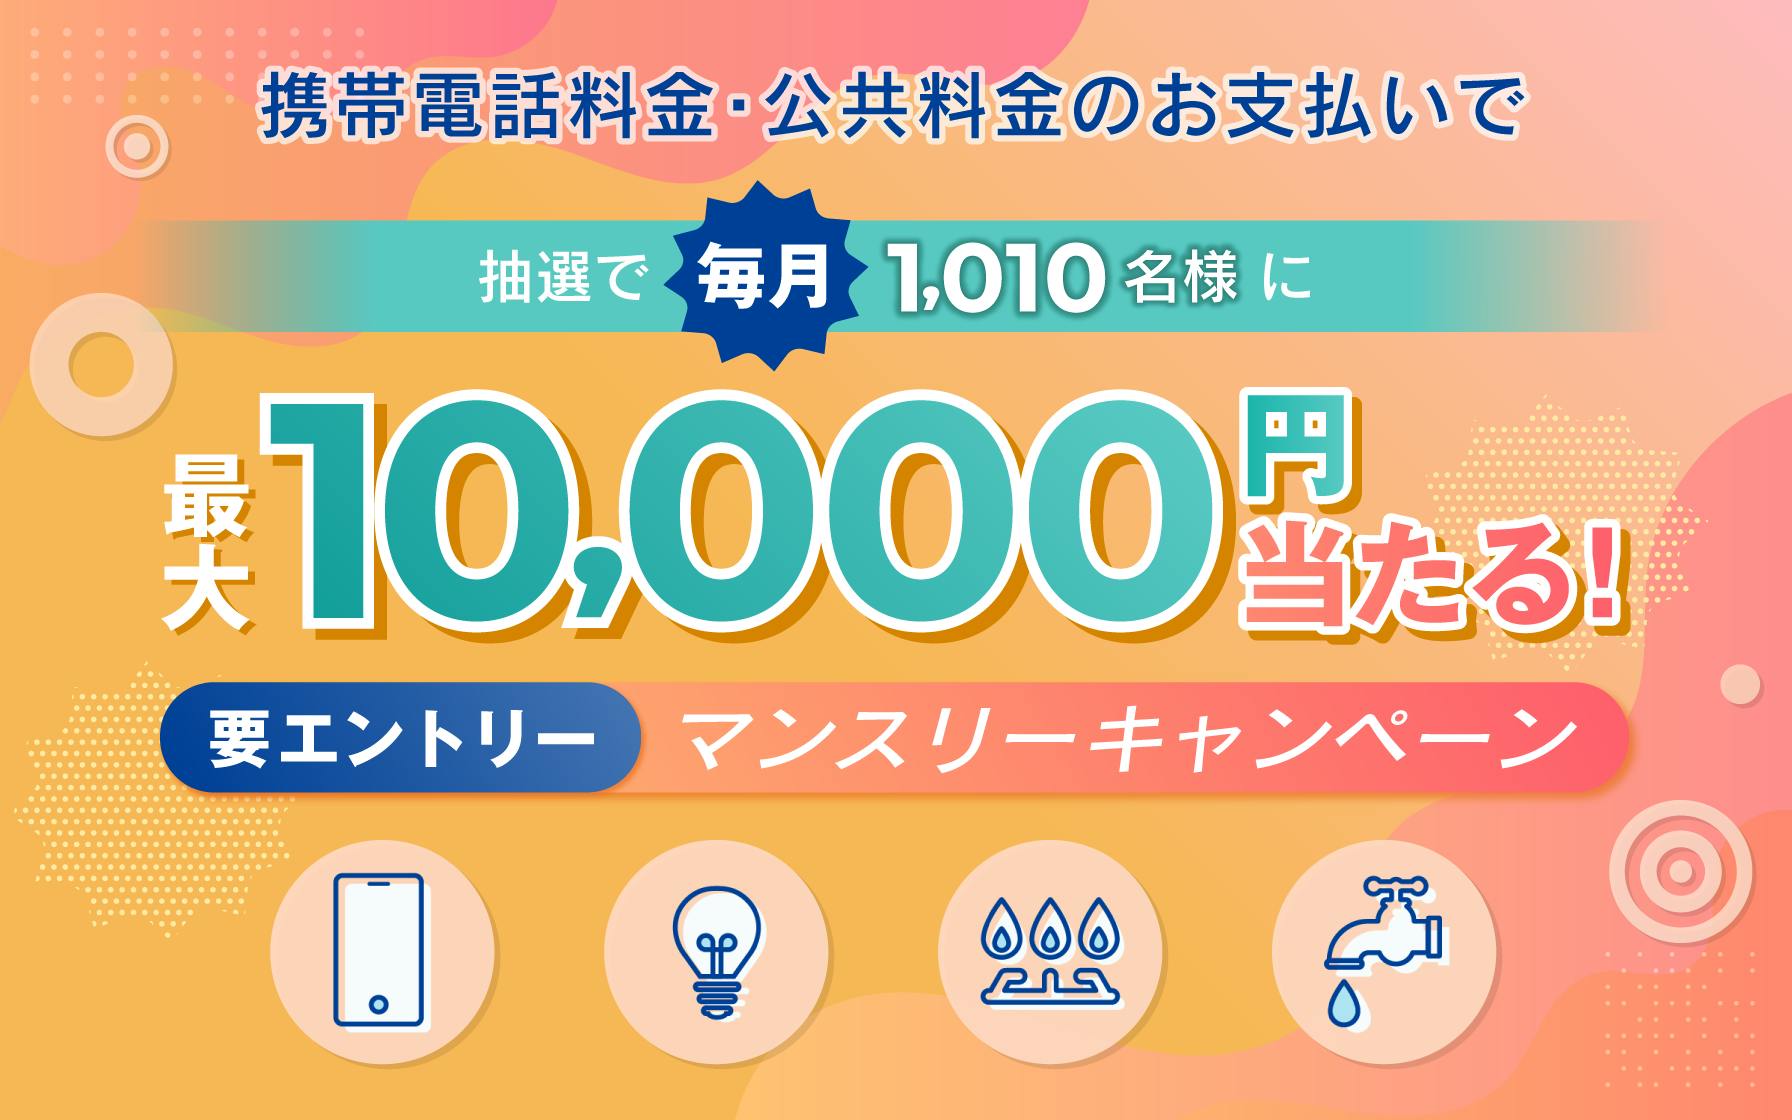 携帯電話料金、公共料金のお支払いで毎月最大10,000円当たる